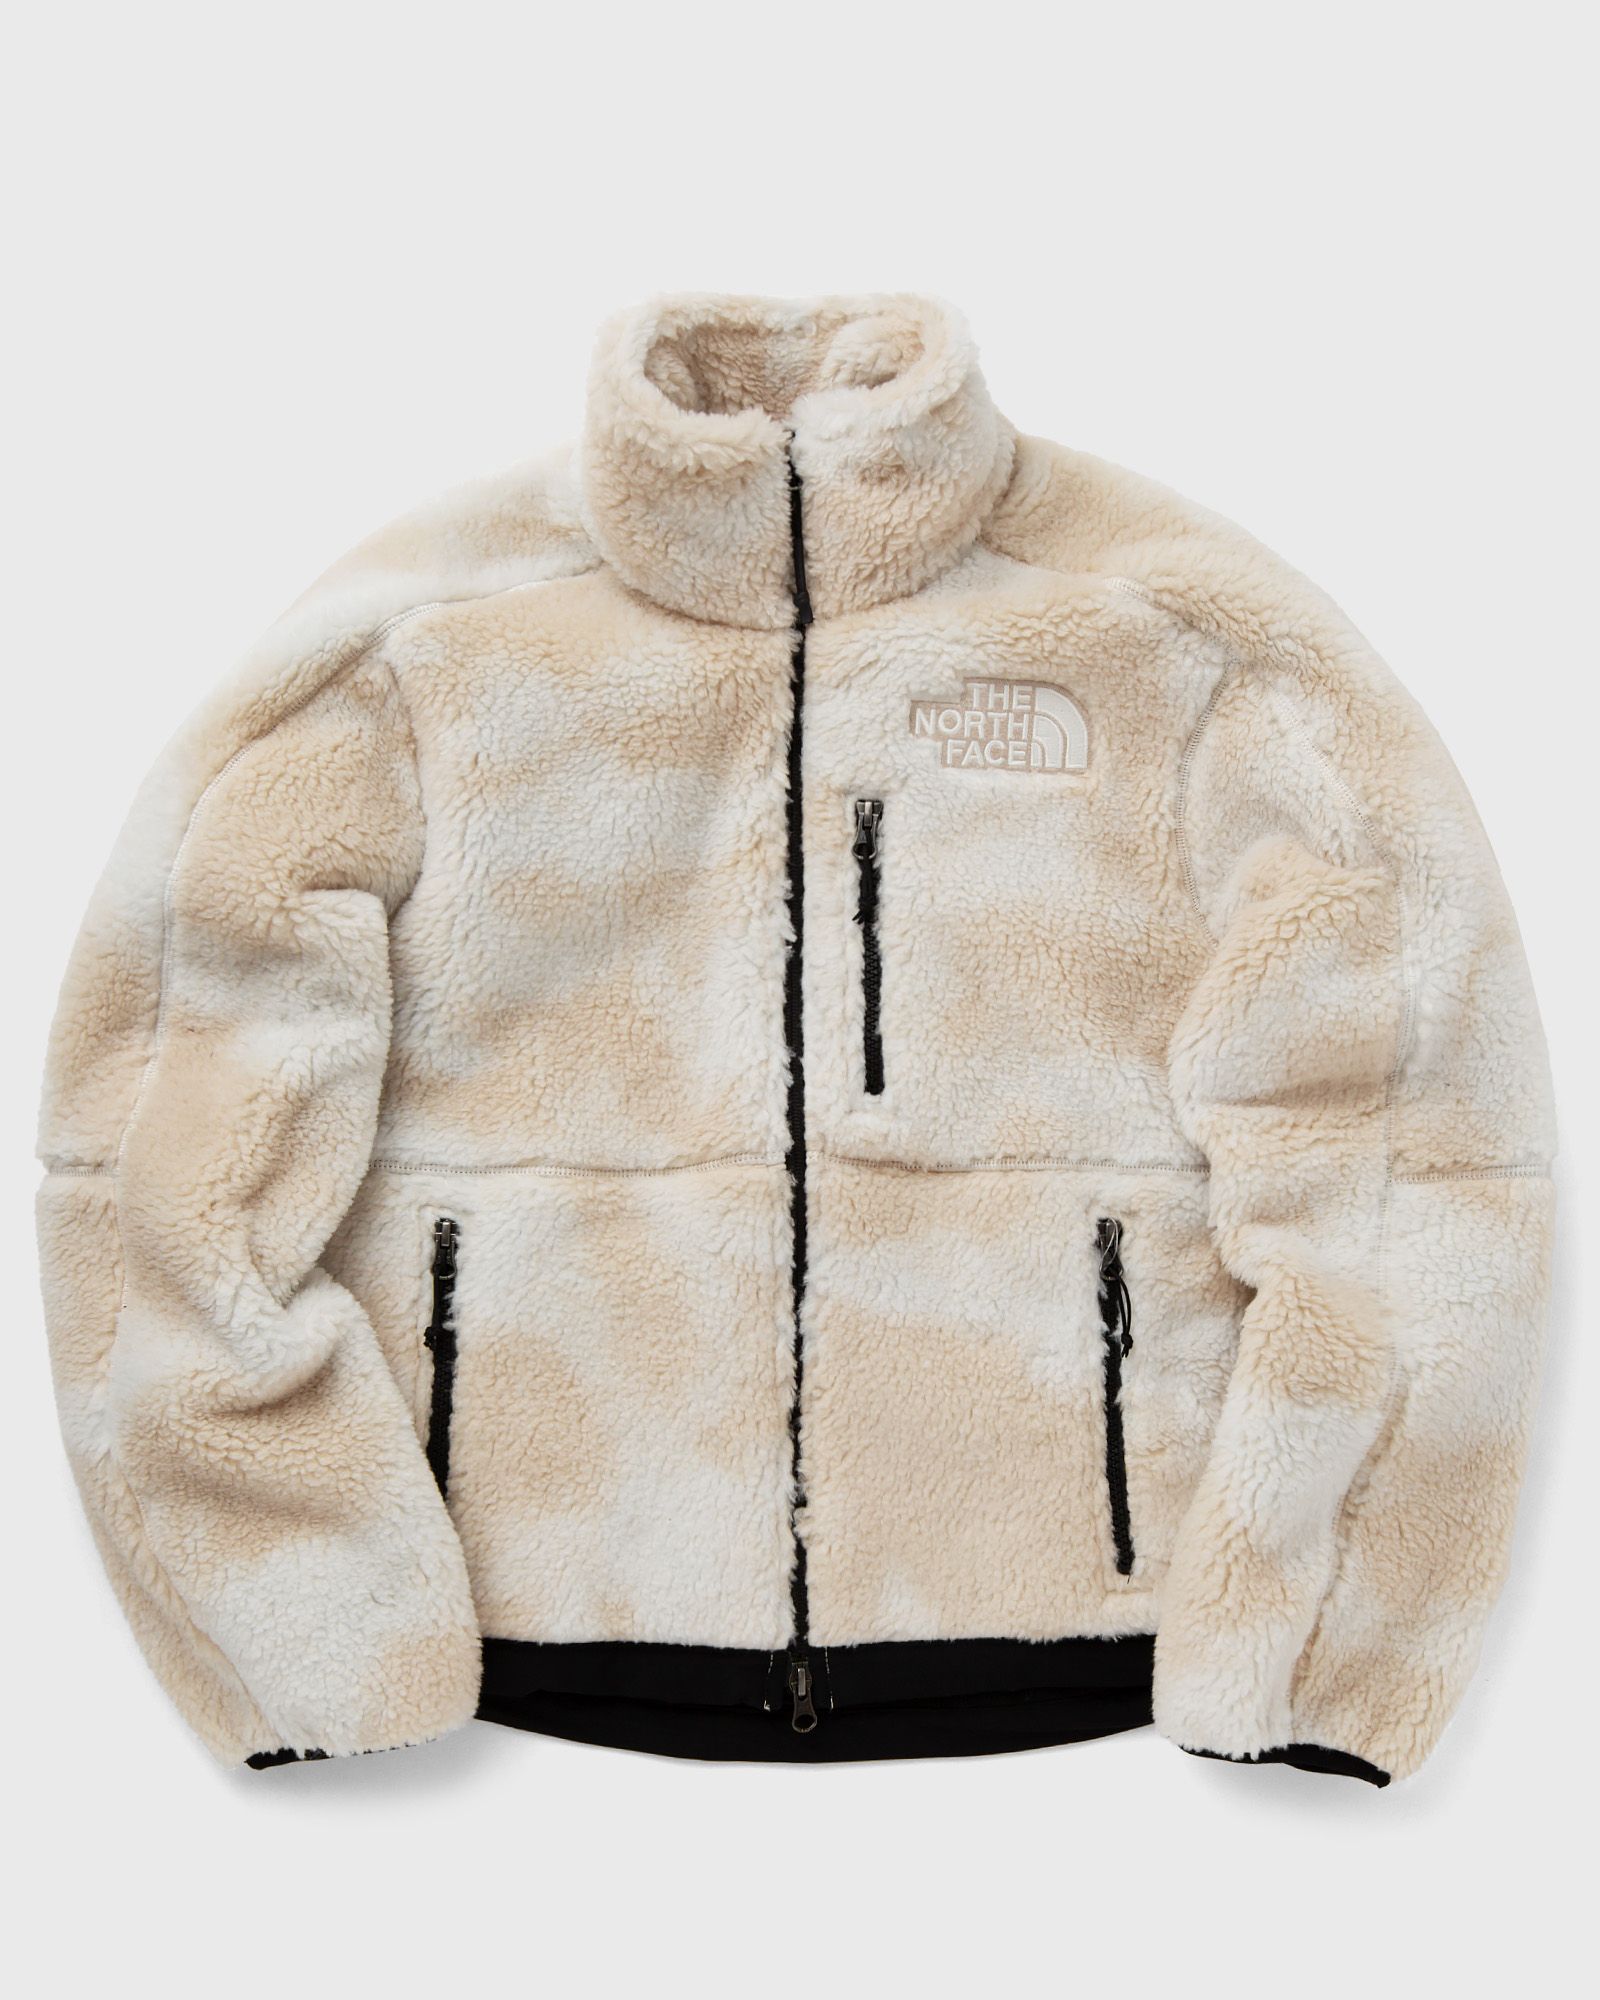 The North Face - w denali x jacket women fleece jackets white in größe:l